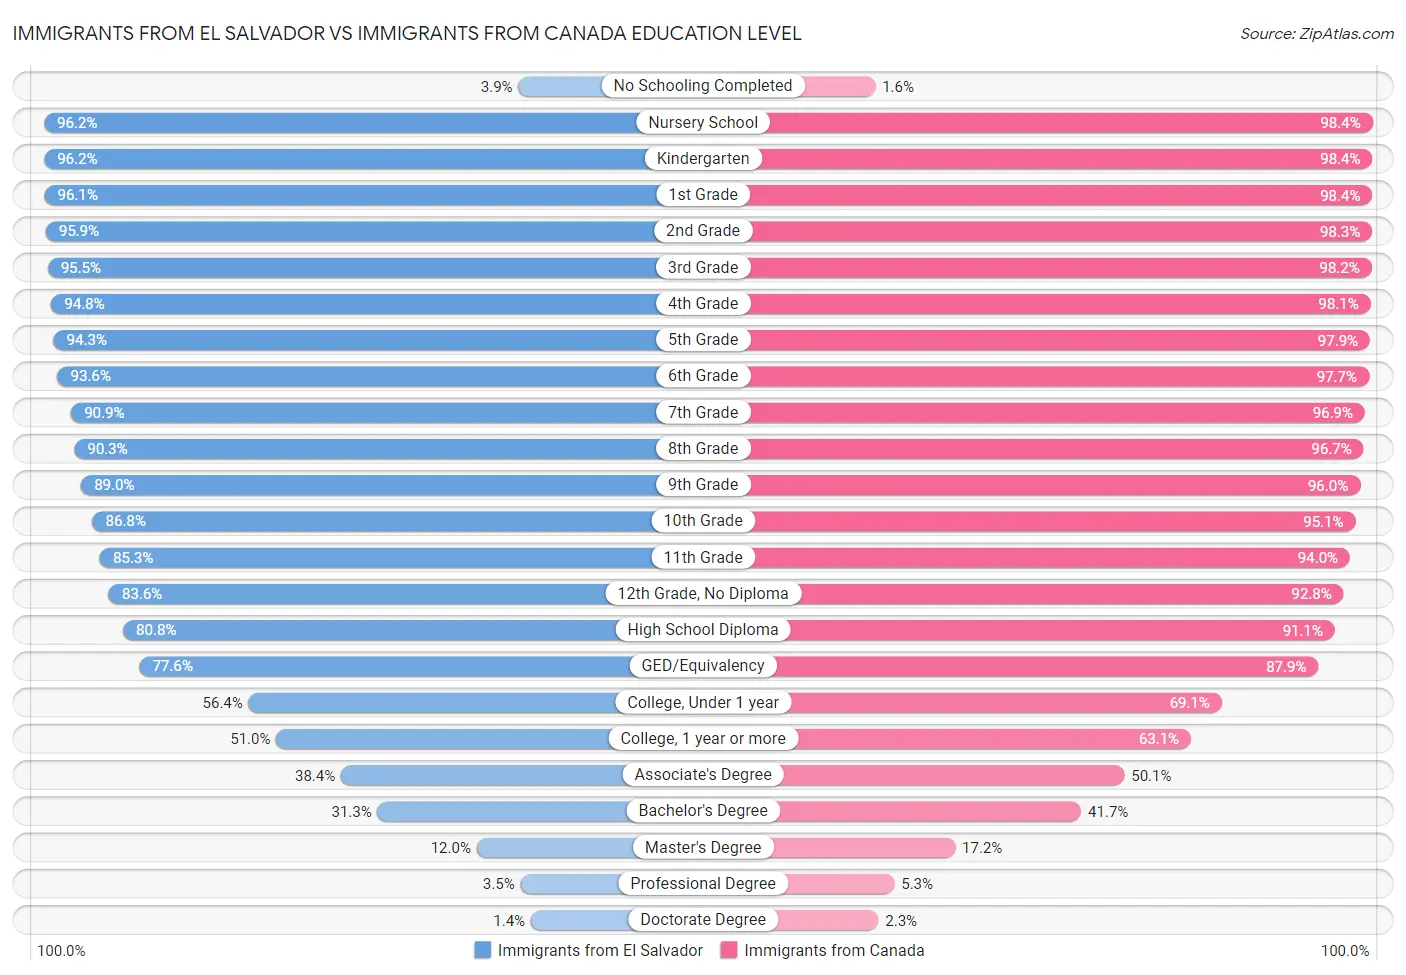 Immigrants from El Salvador vs Immigrants from Canada Education Level